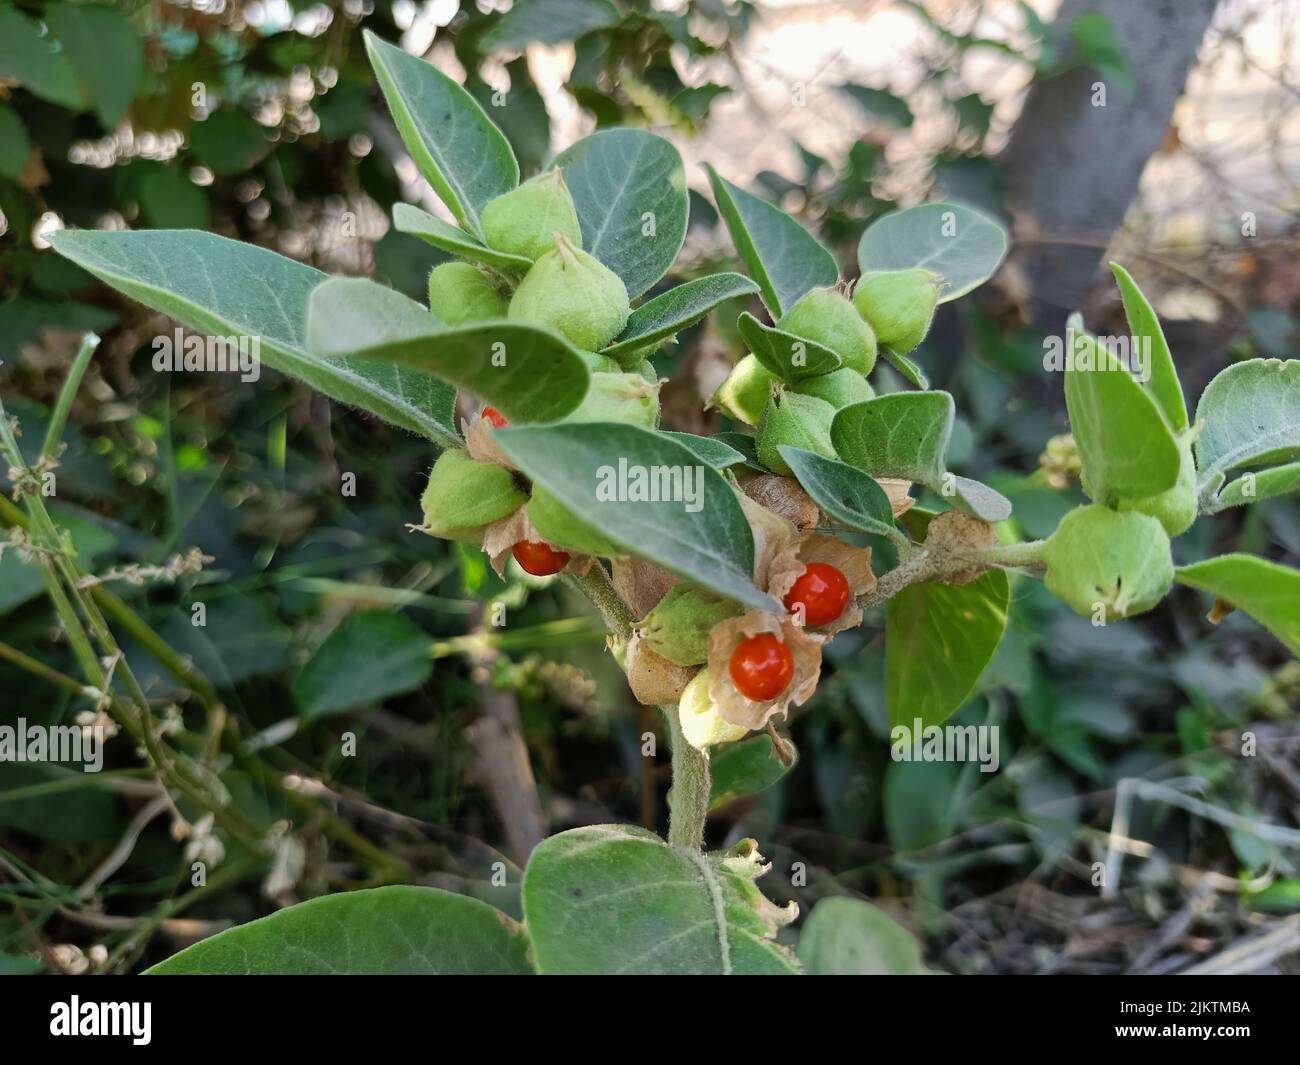 Ashwagandha grüne Pflanzen wachsen im Garten. Withania somnifera geht aus. Indischer Ginseng, giftige Stachelbeere oder Winterkirsche. Ayurvedische Medizin p Stockfoto